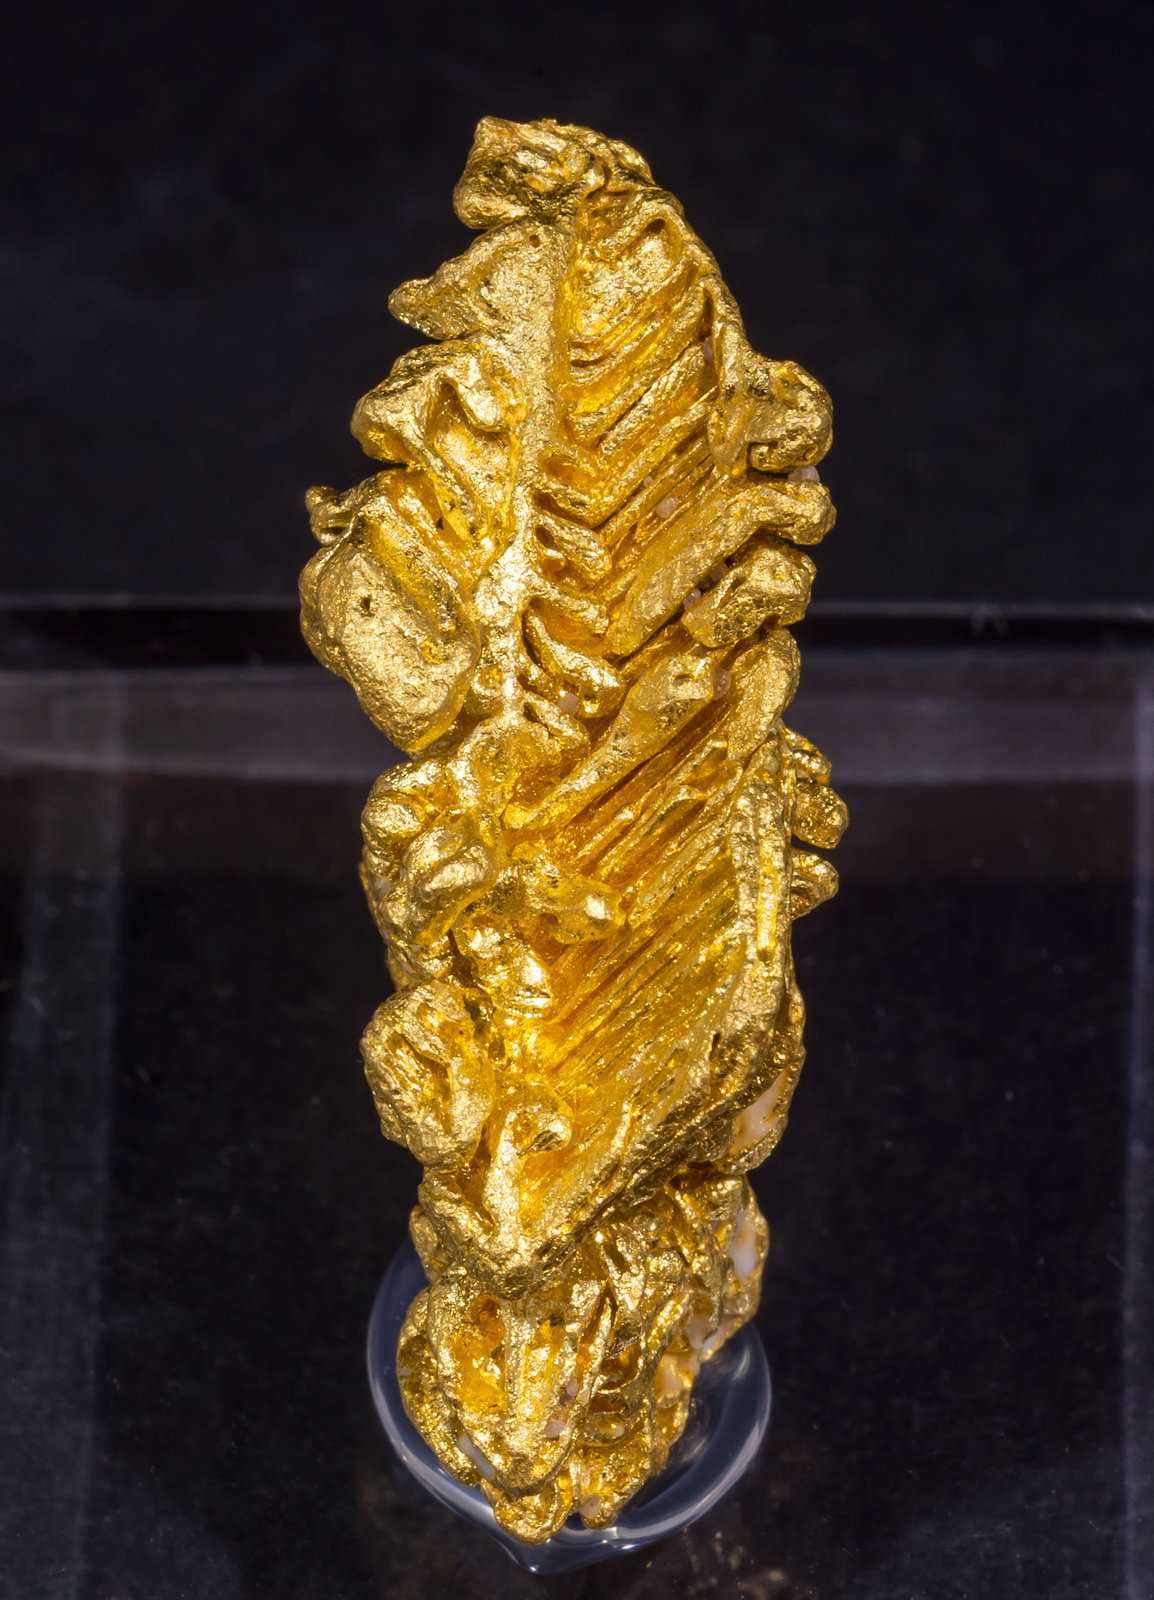 specimens/s_imagesAL5/Gold-TJ89AL5f.jpg